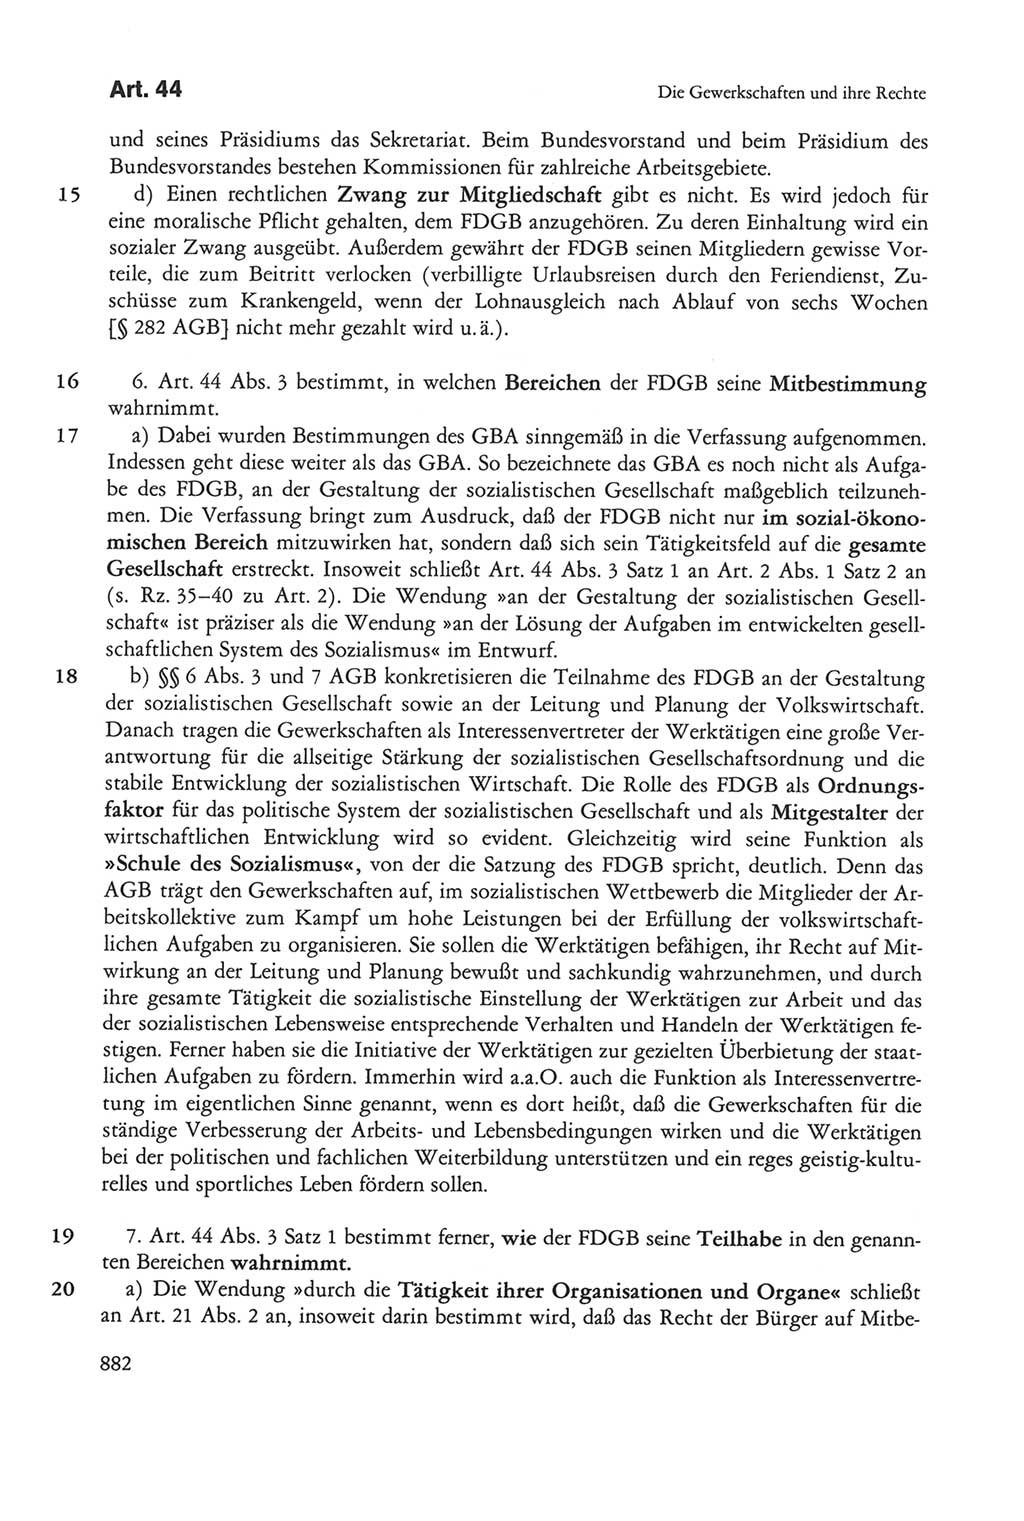 Die sozialistische Verfassung der Deutschen Demokratischen Republik (DDR), Kommentar 1982, Seite 882 (Soz. Verf. DDR Komm. 1982, S. 882)